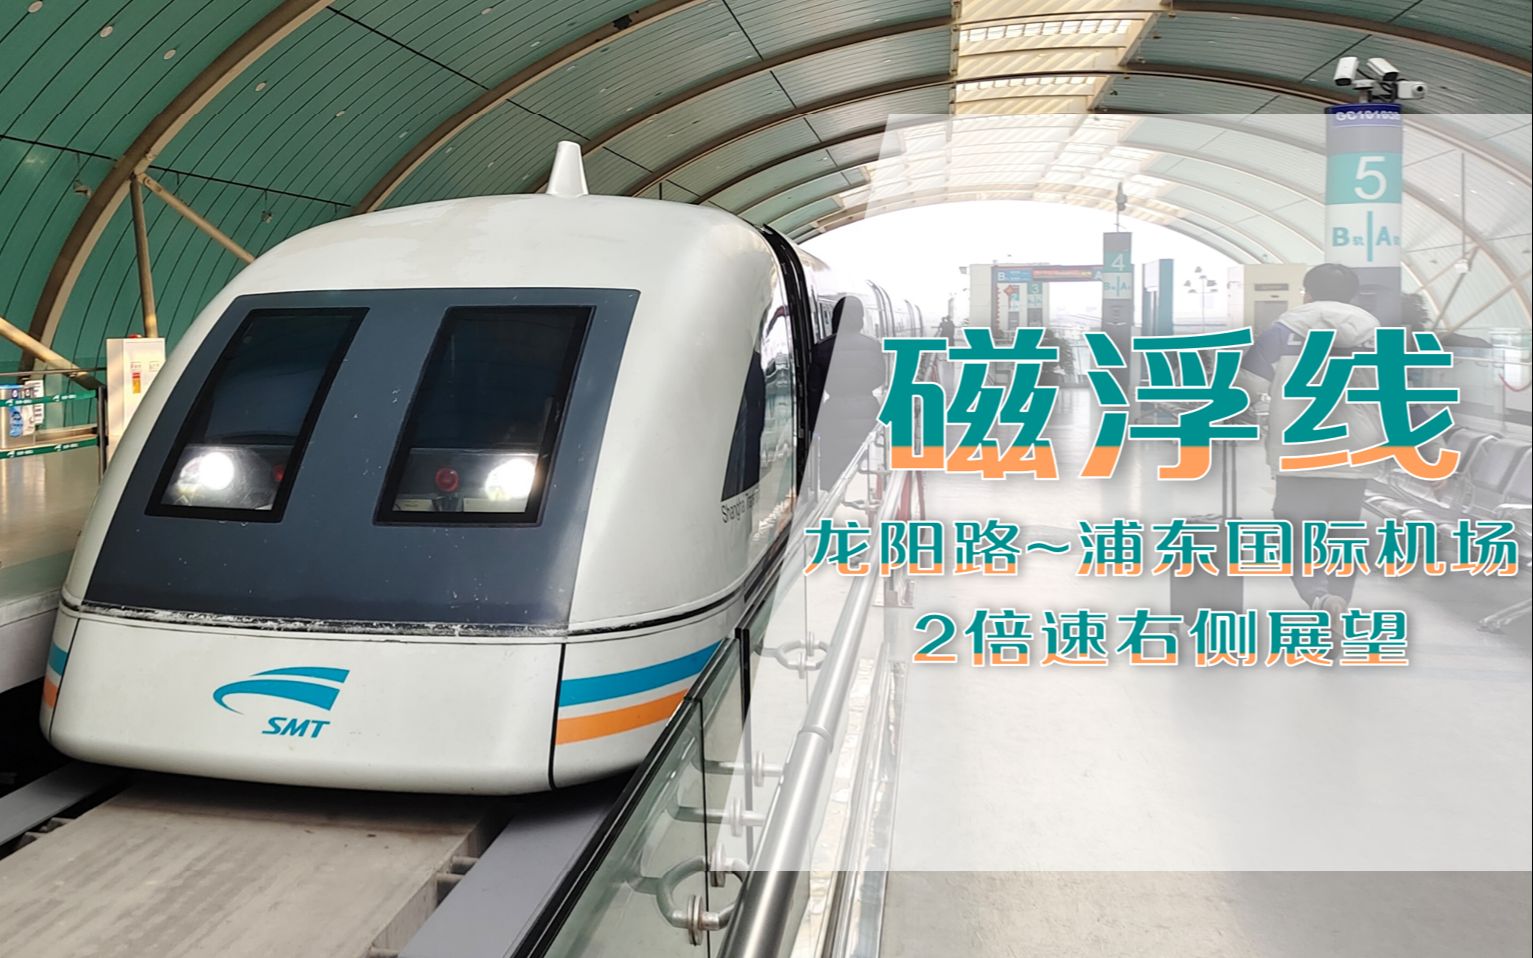 连接市区和机场的磁浮快线——上海磁浮列车示范运营线(龙阳路~浦东